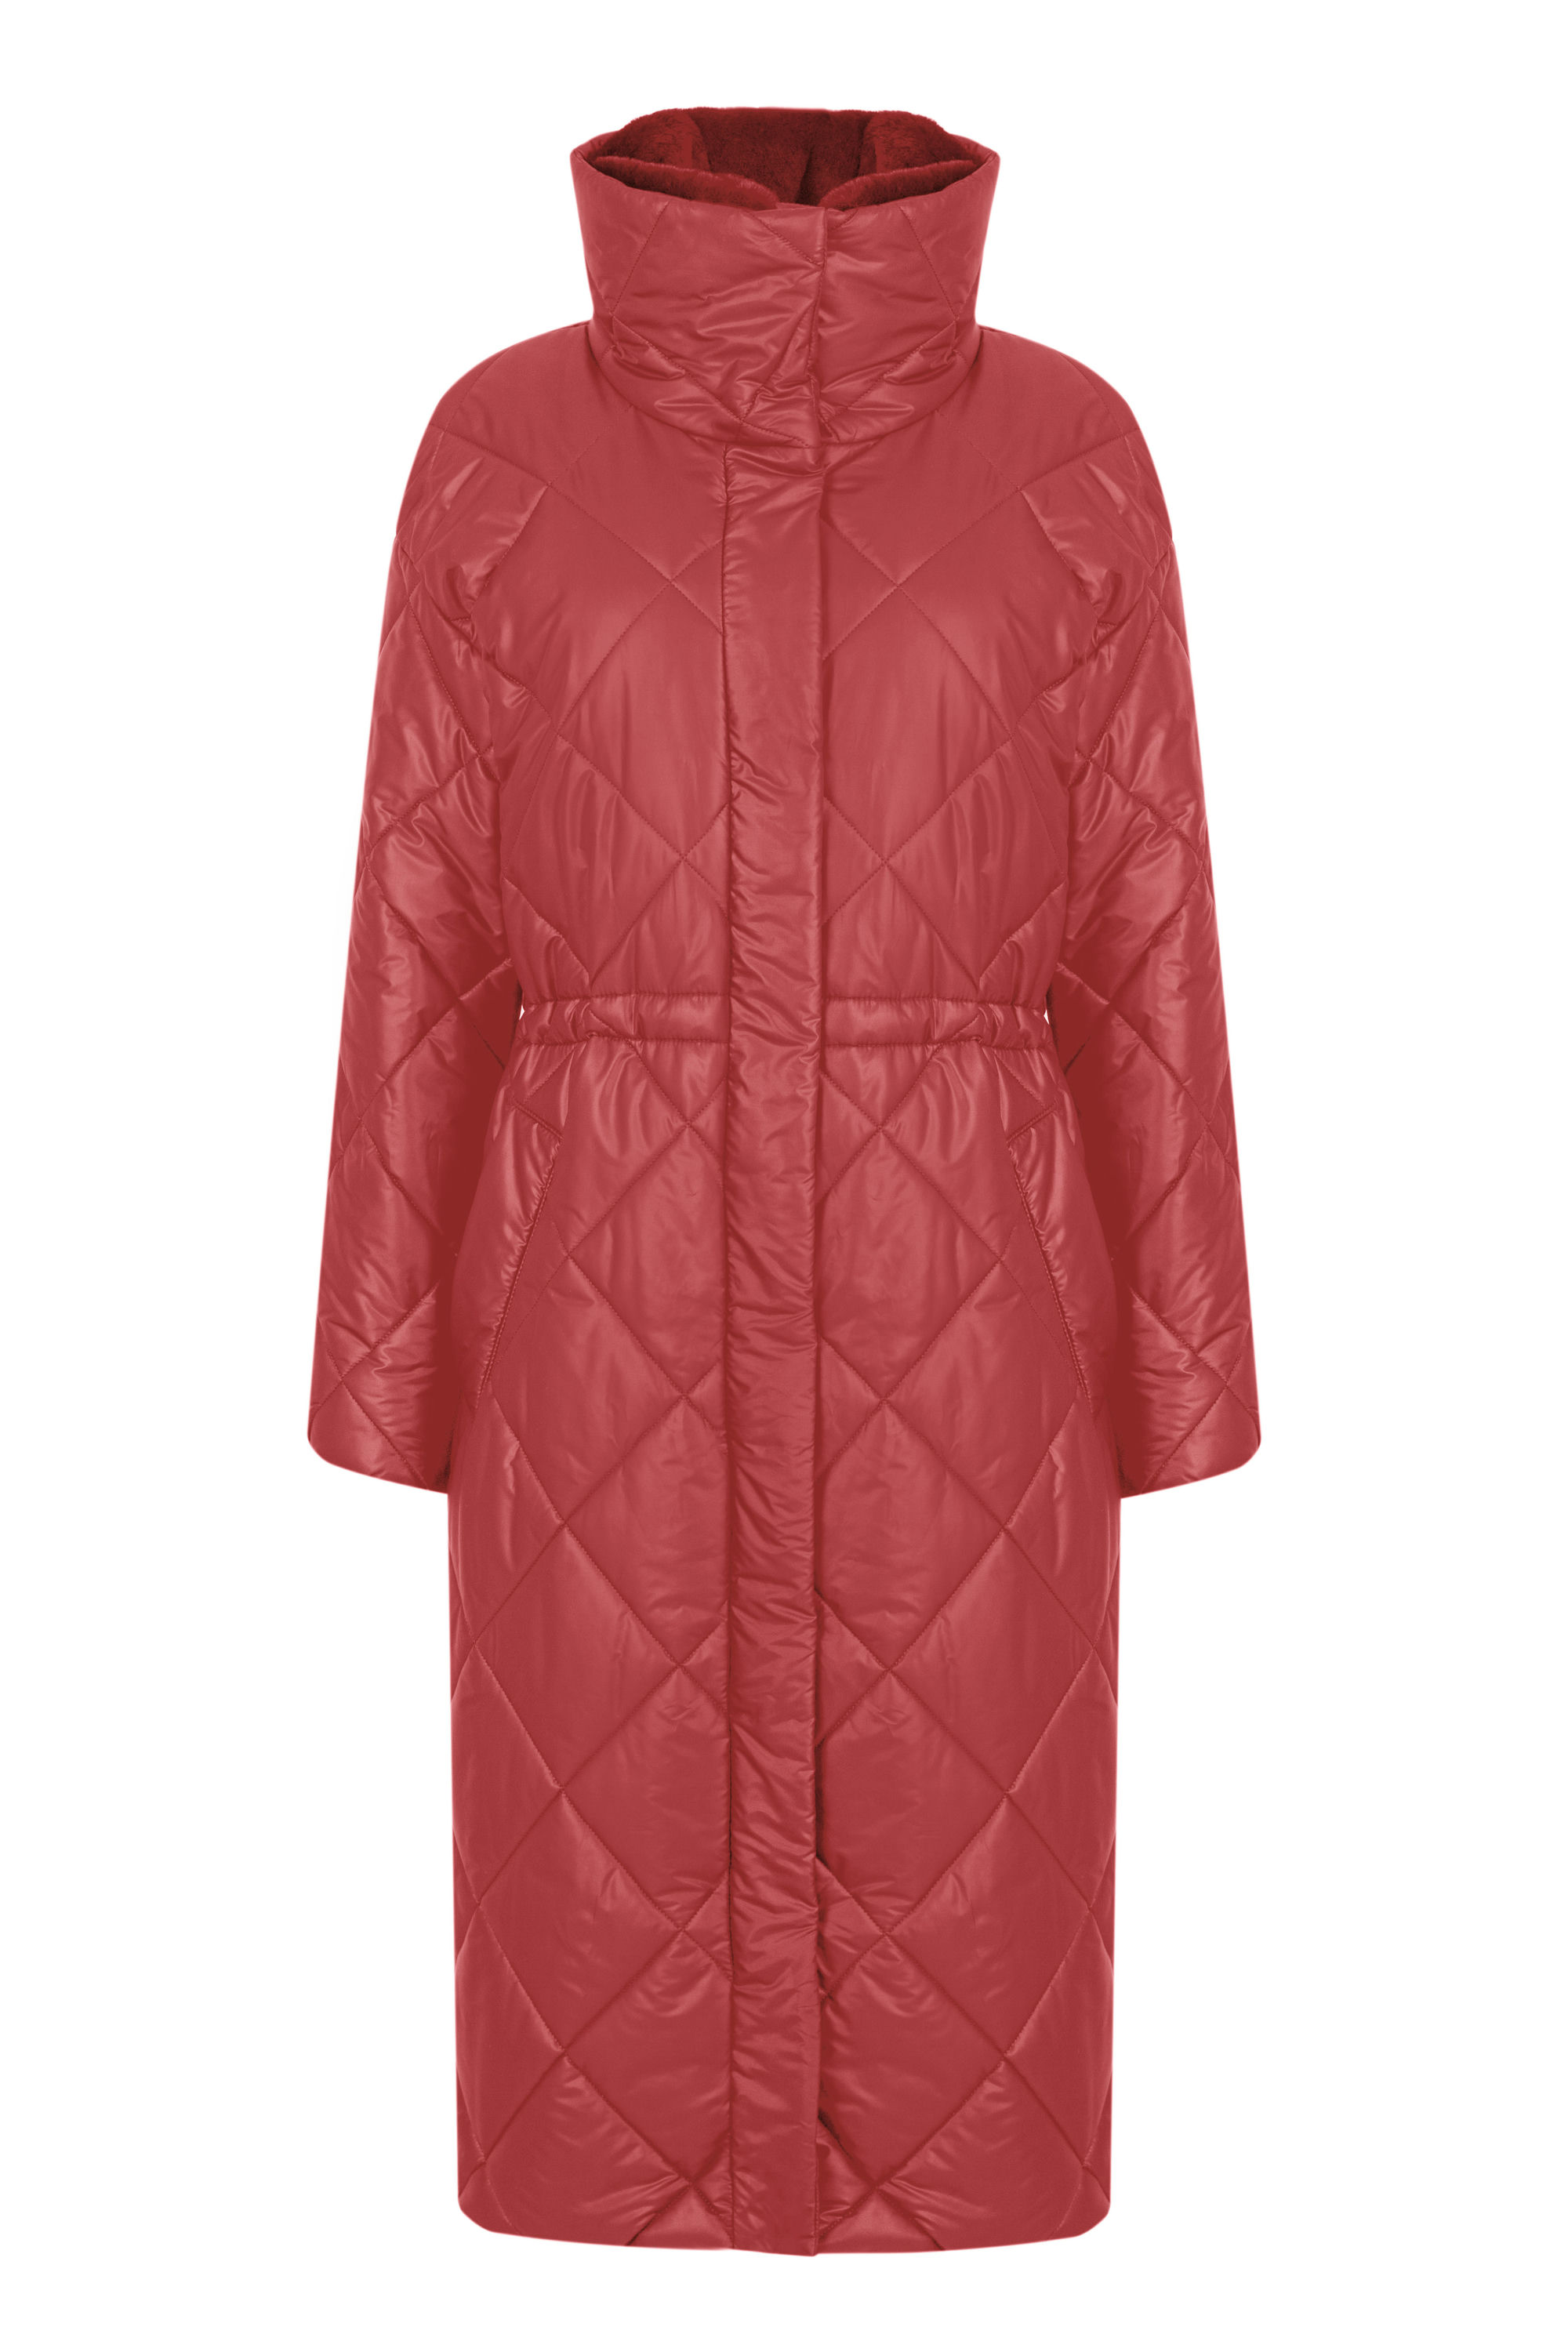 Пальто женское плащевое утепленное 5S-12411-1. Фото 1.